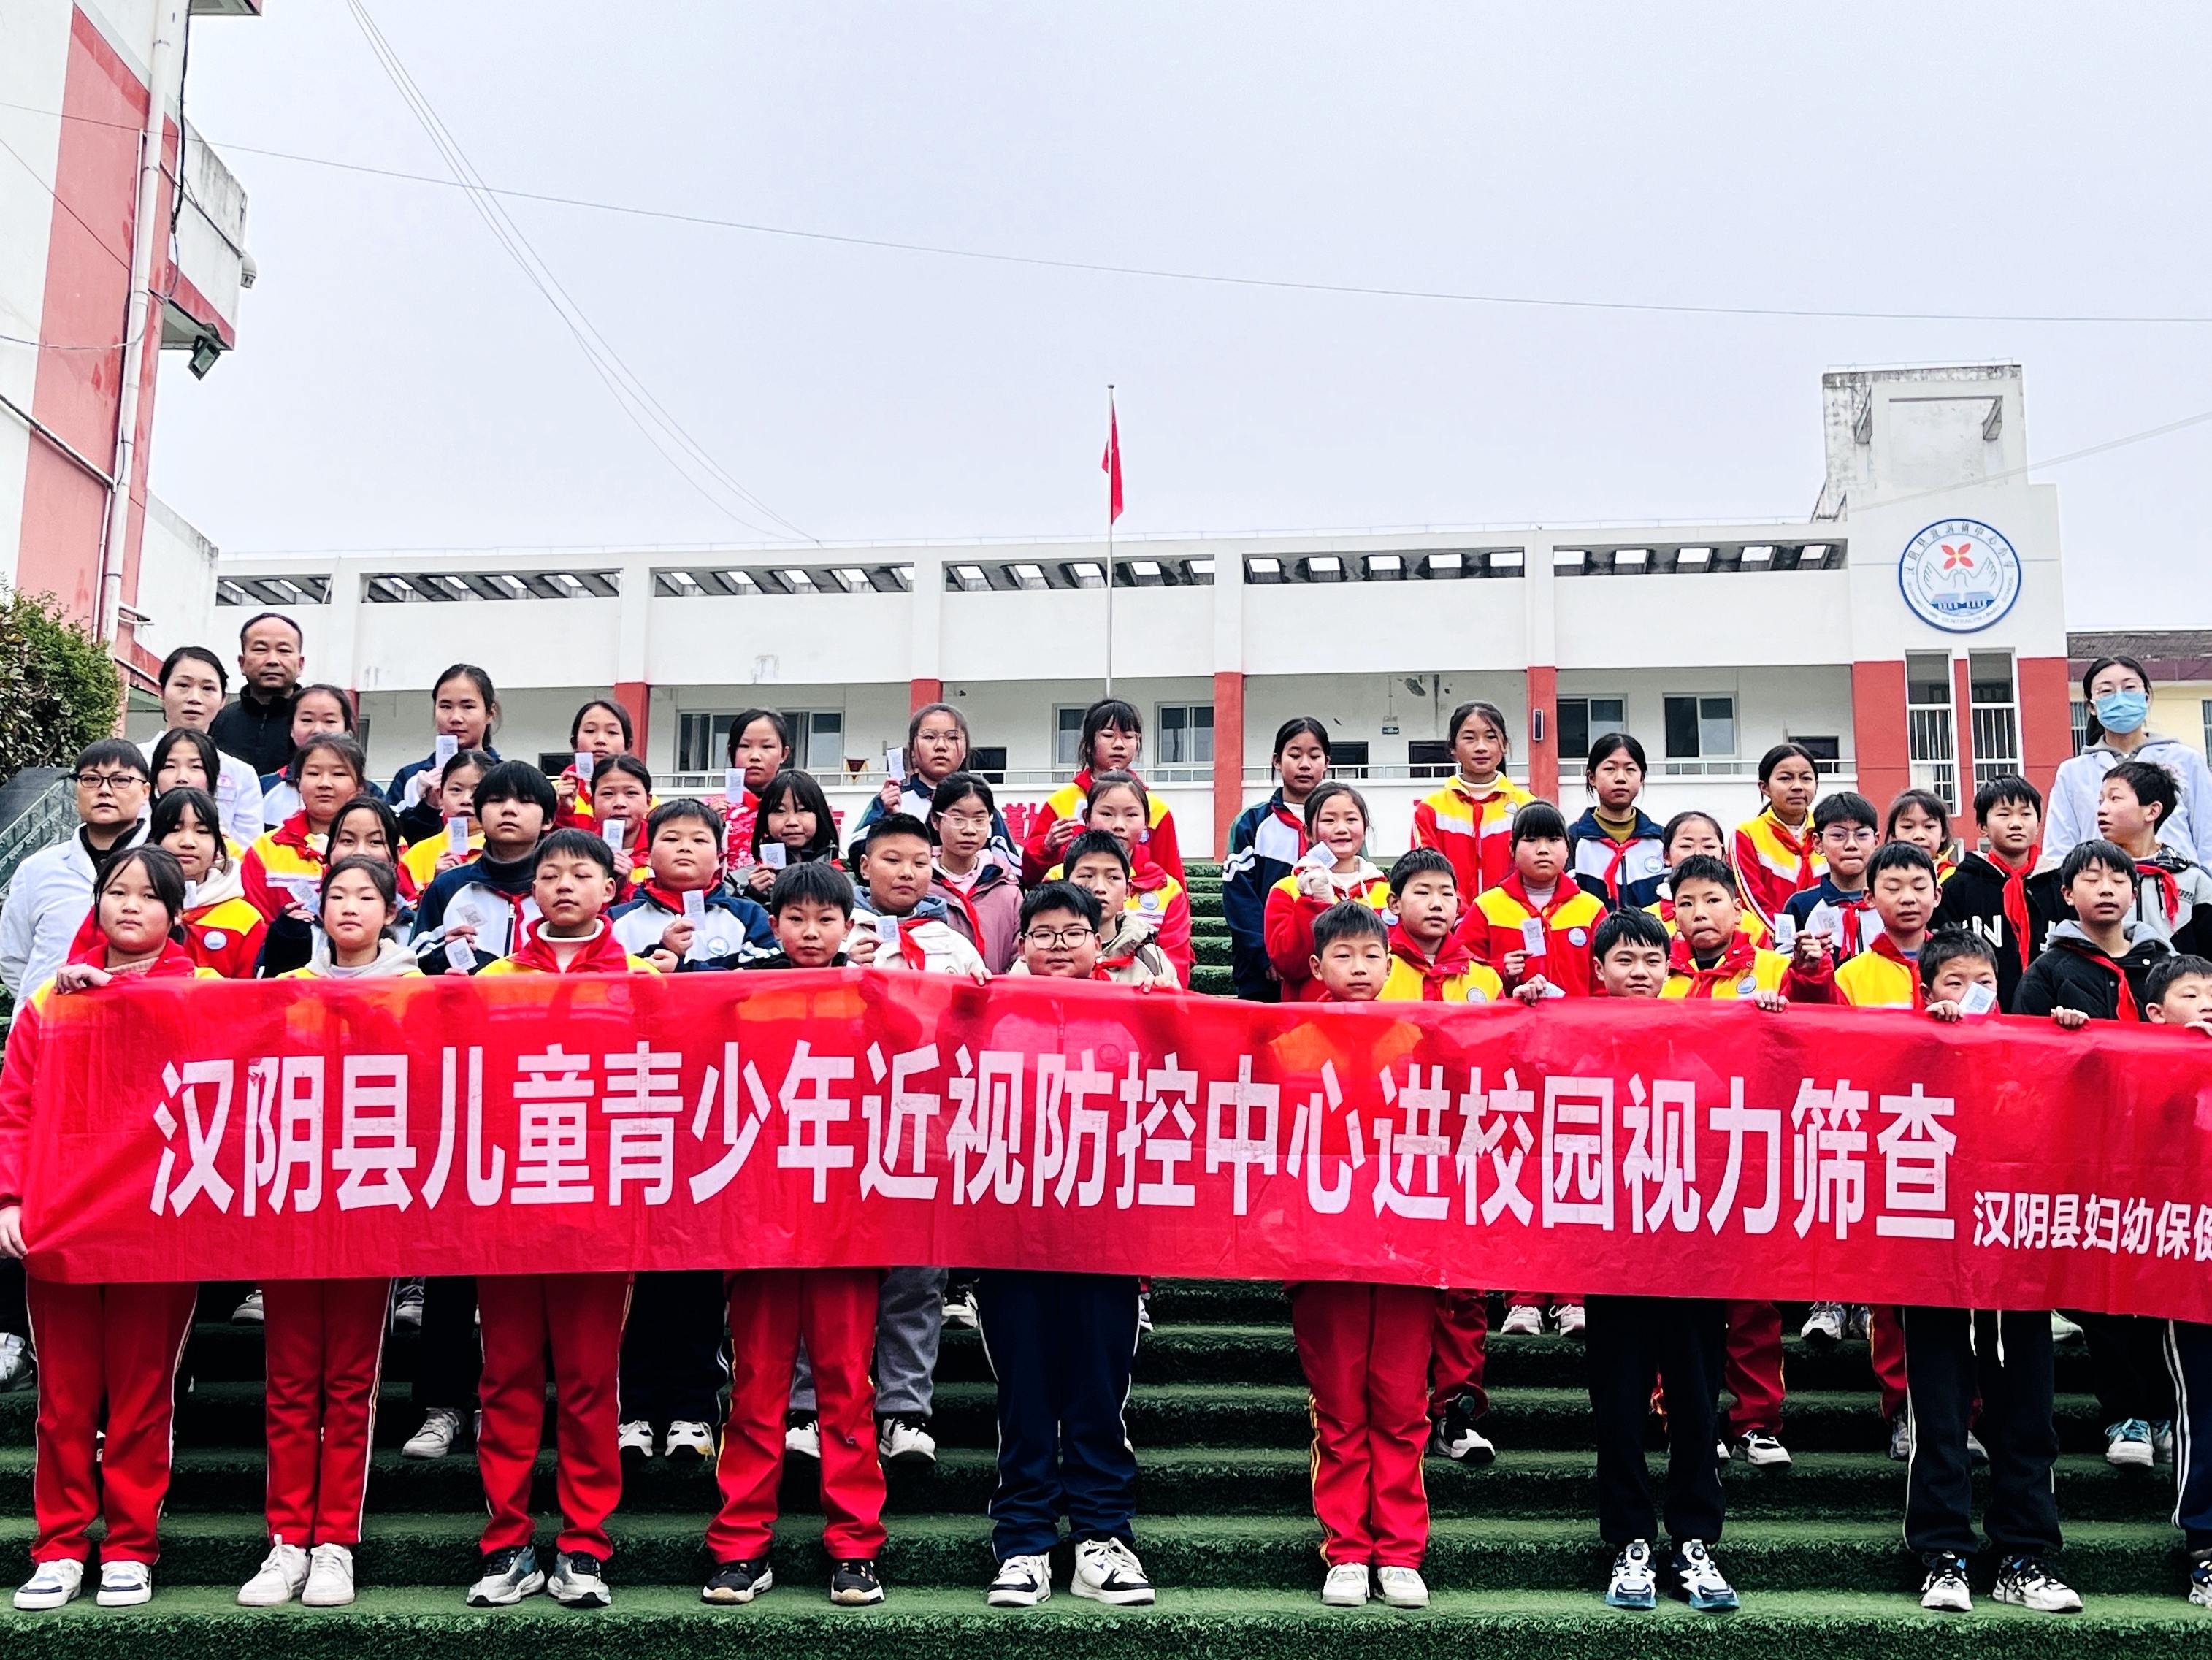 汉阴县漩涡镇中心小学扎实开展学生近视防控工作